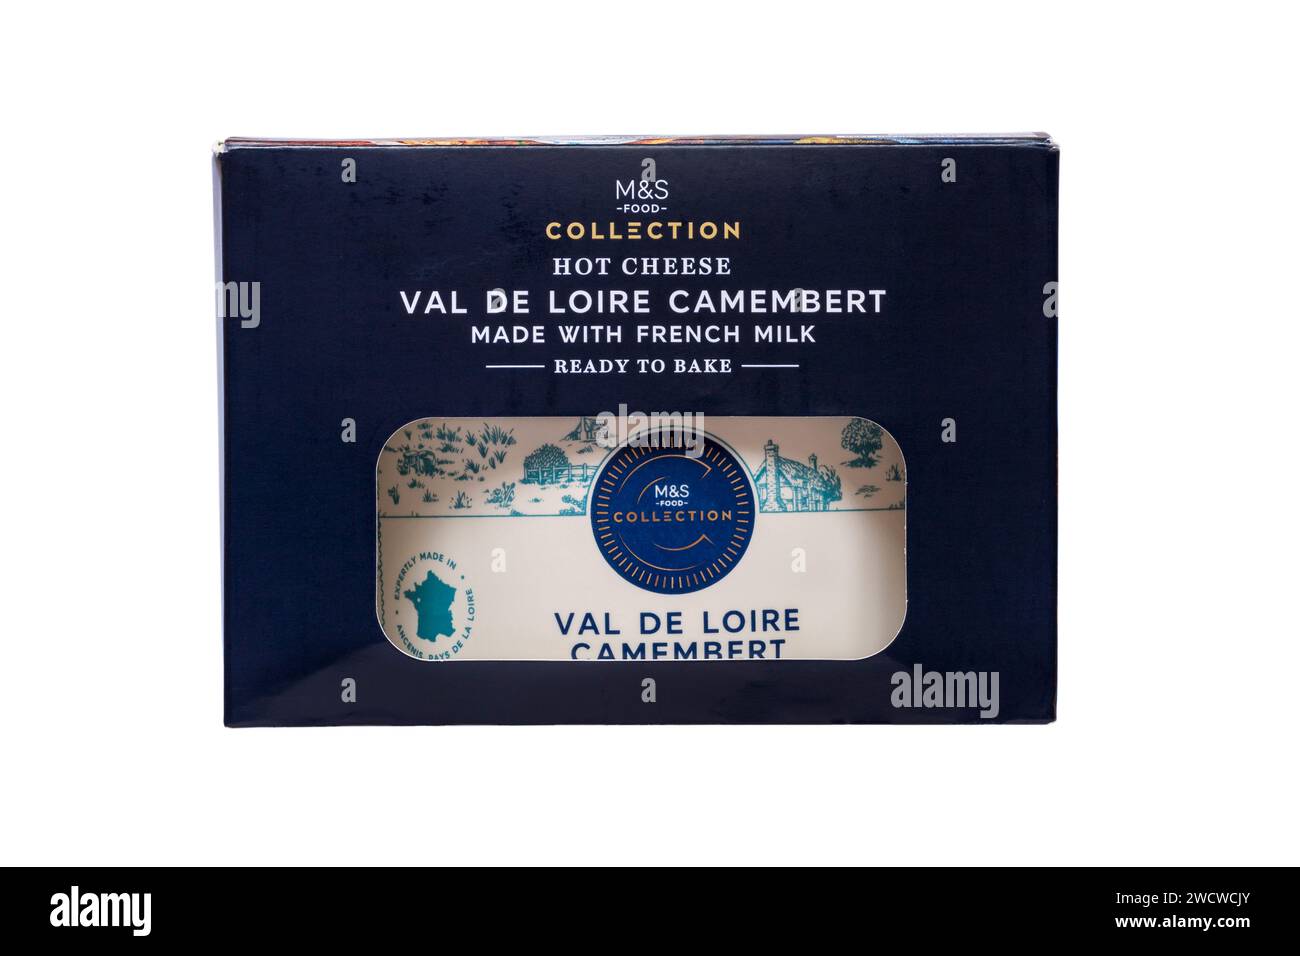 Hot Cheese Val de Loire Camembert von M&S mit französischem Käse, fertig zum Backen isoliert auf weißem Hintergrund Stockfoto